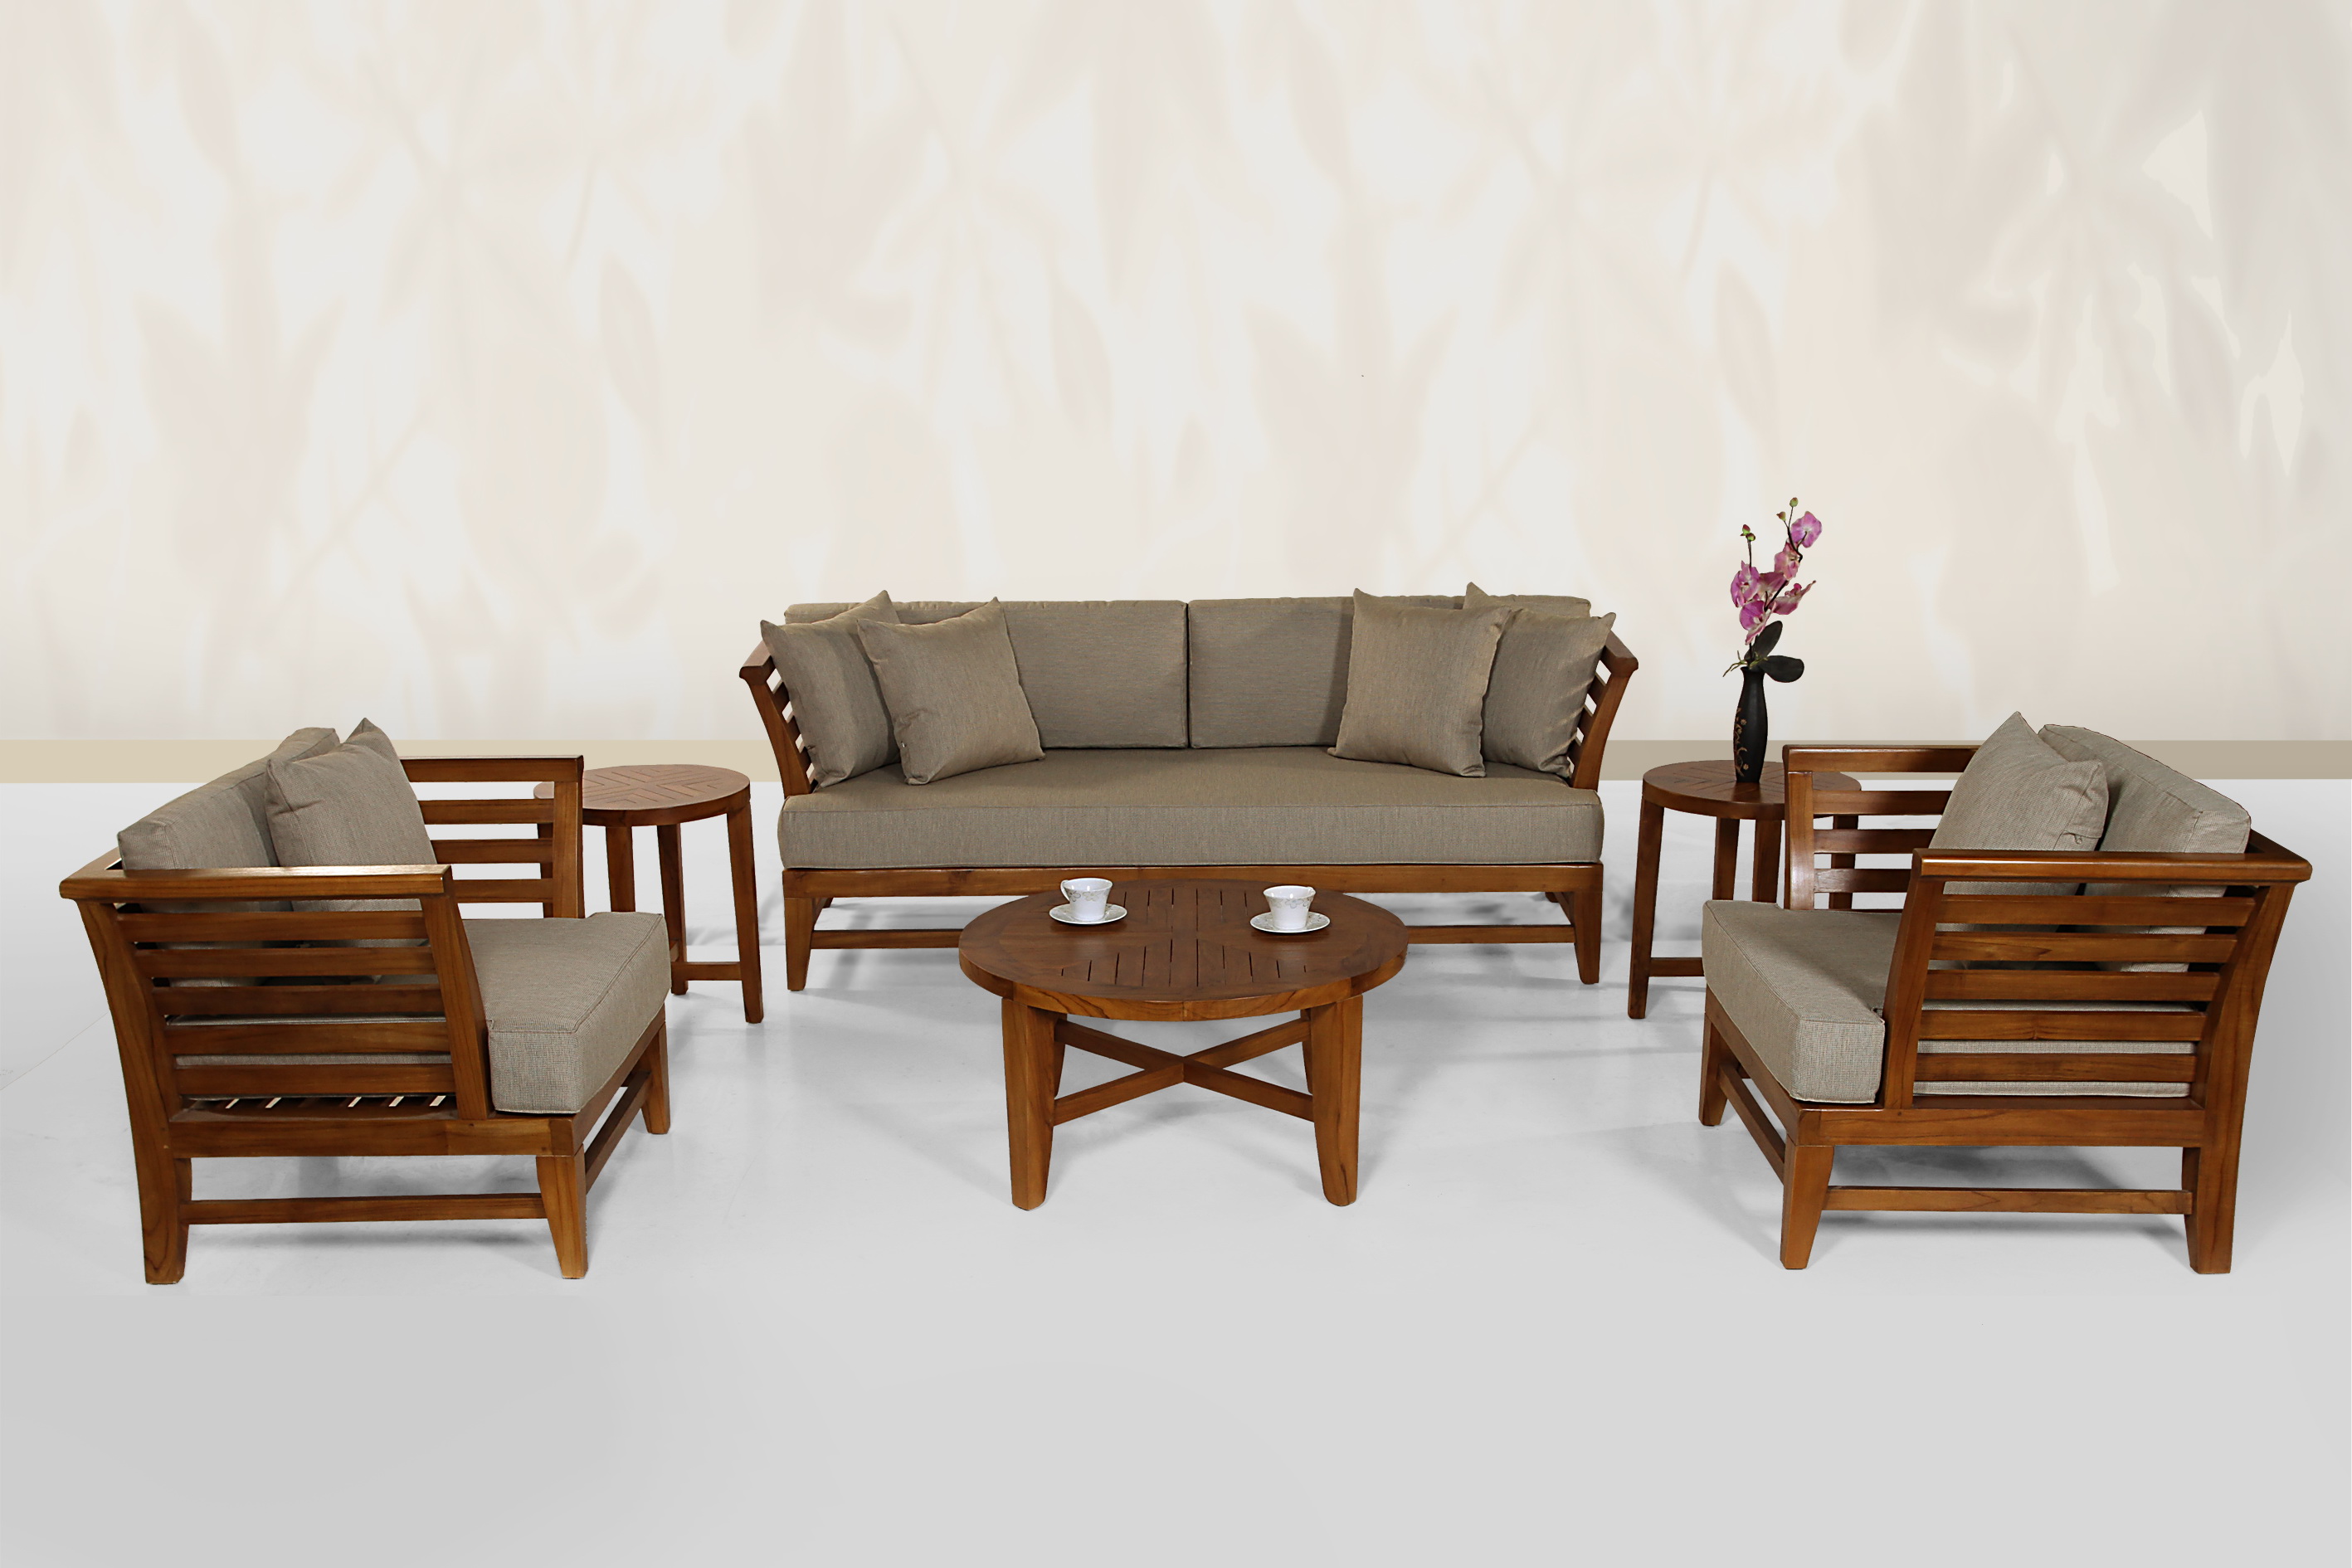 Indoor Teak Furniture In Contemporary Interior Design